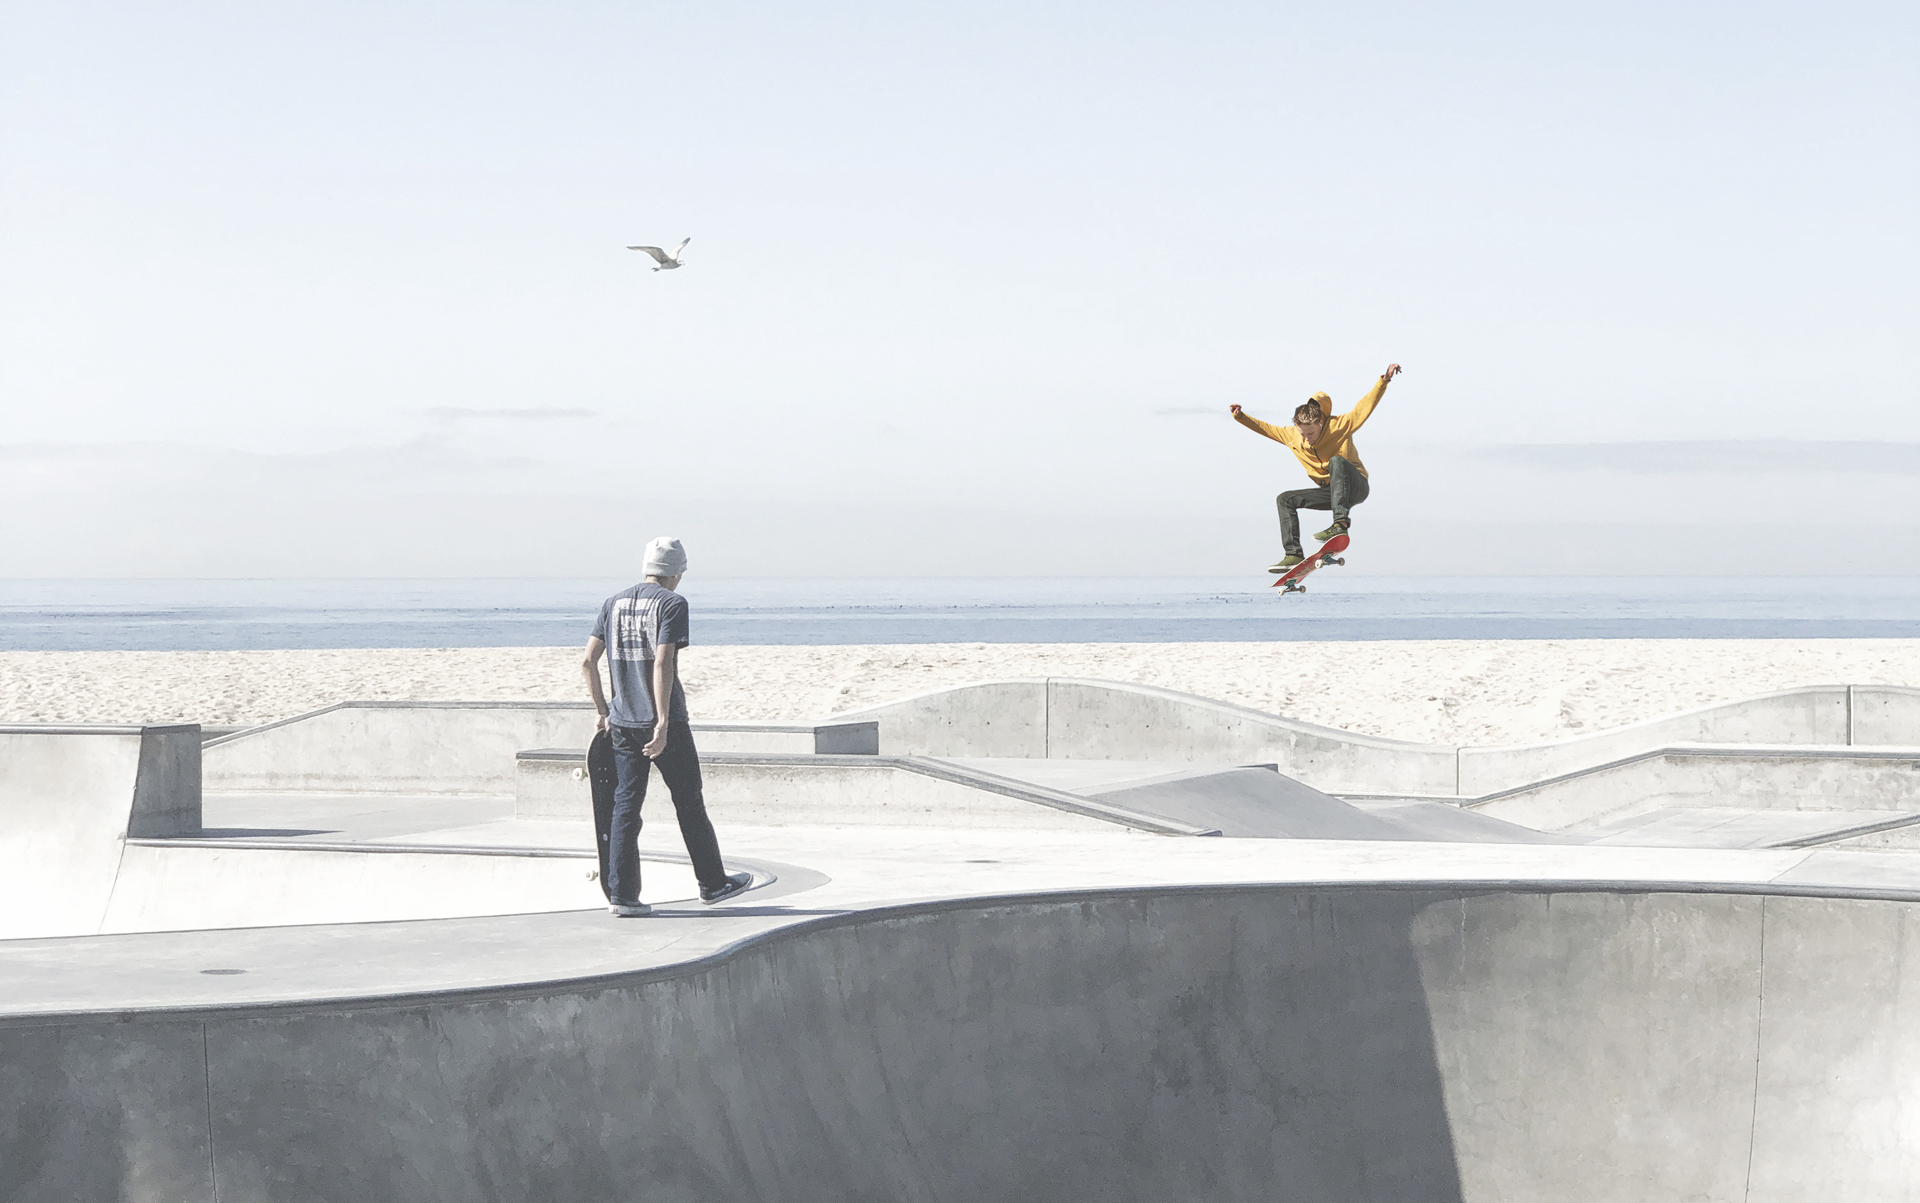 Zwei Skater in einem Skatepark aus Beton, einer springt, der andere hält sein Board. Im Hintergrund sind das Meer und eine Möwe zu sehen.